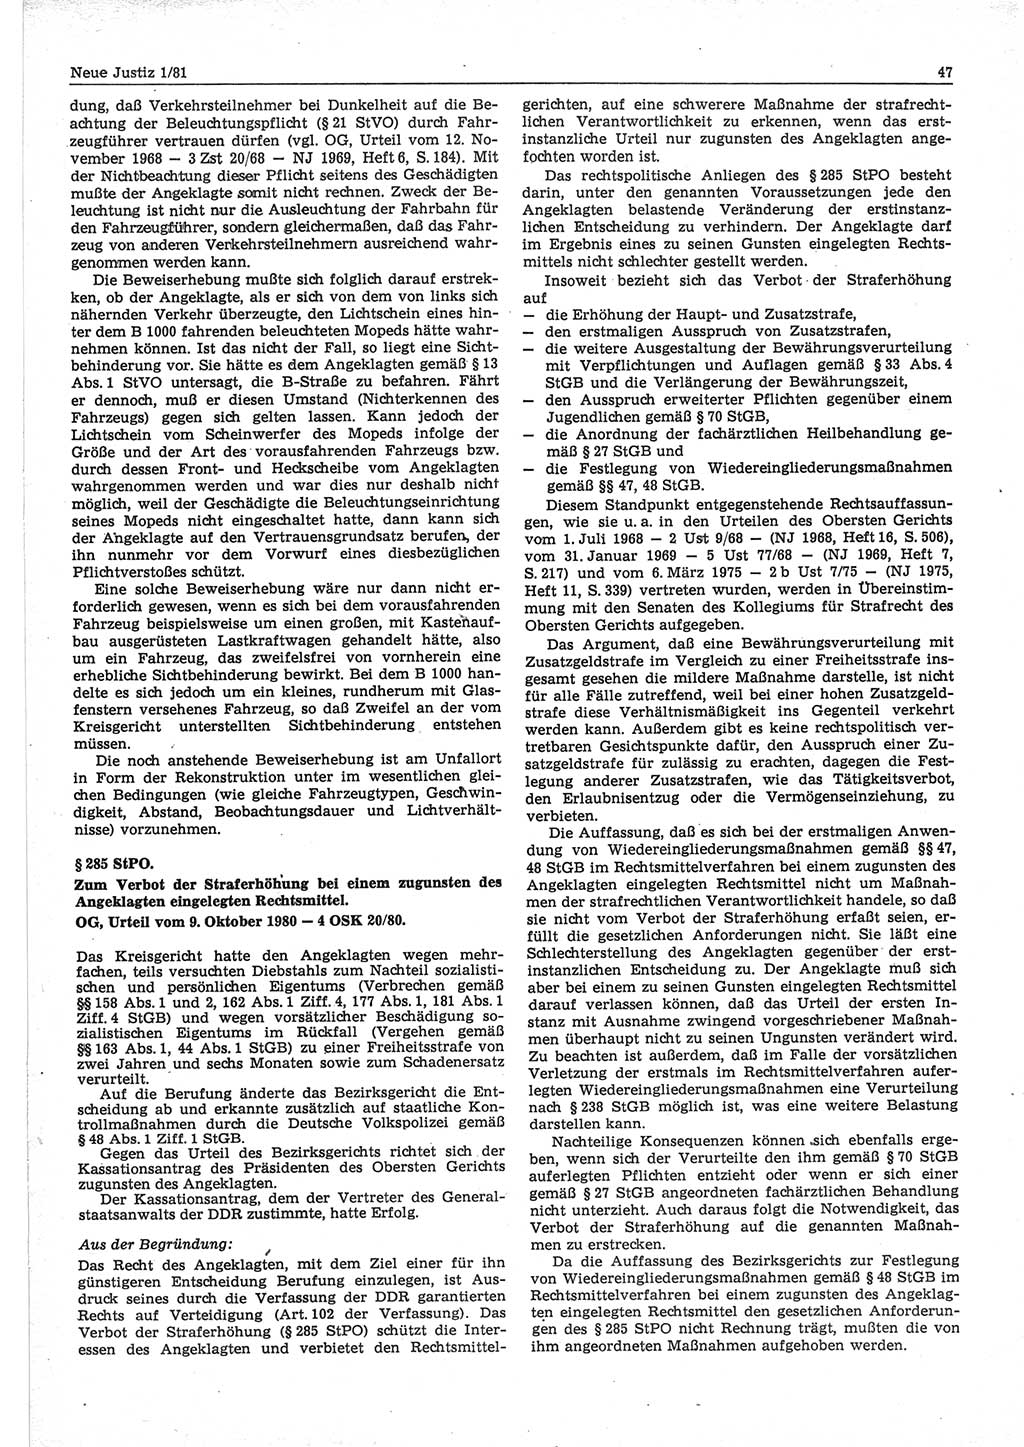 Neue Justiz (NJ), Zeitschrift für sozialistisches Recht und Gesetzlichkeit [Deutsche Demokratische Republik (DDR)], 35. Jahrgang 1981, Seite 47 (NJ DDR 1981, S. 47)